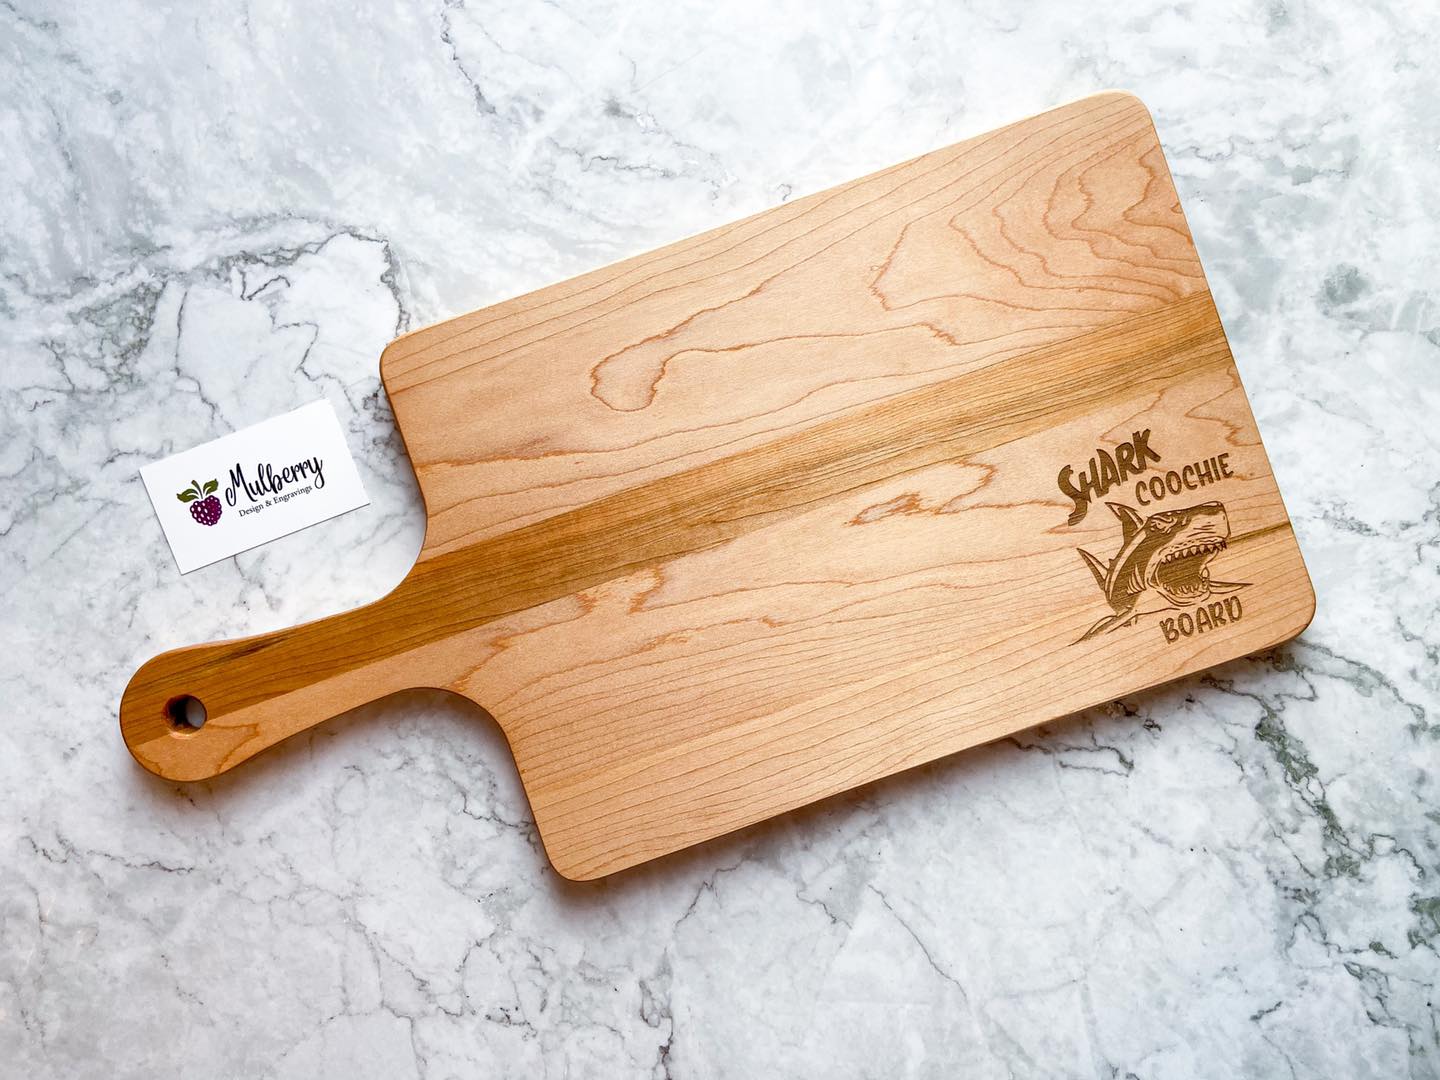 Le Graveur des Bois | Maple cutting board (10 x 10) | ''Chef en devenir  Engraving